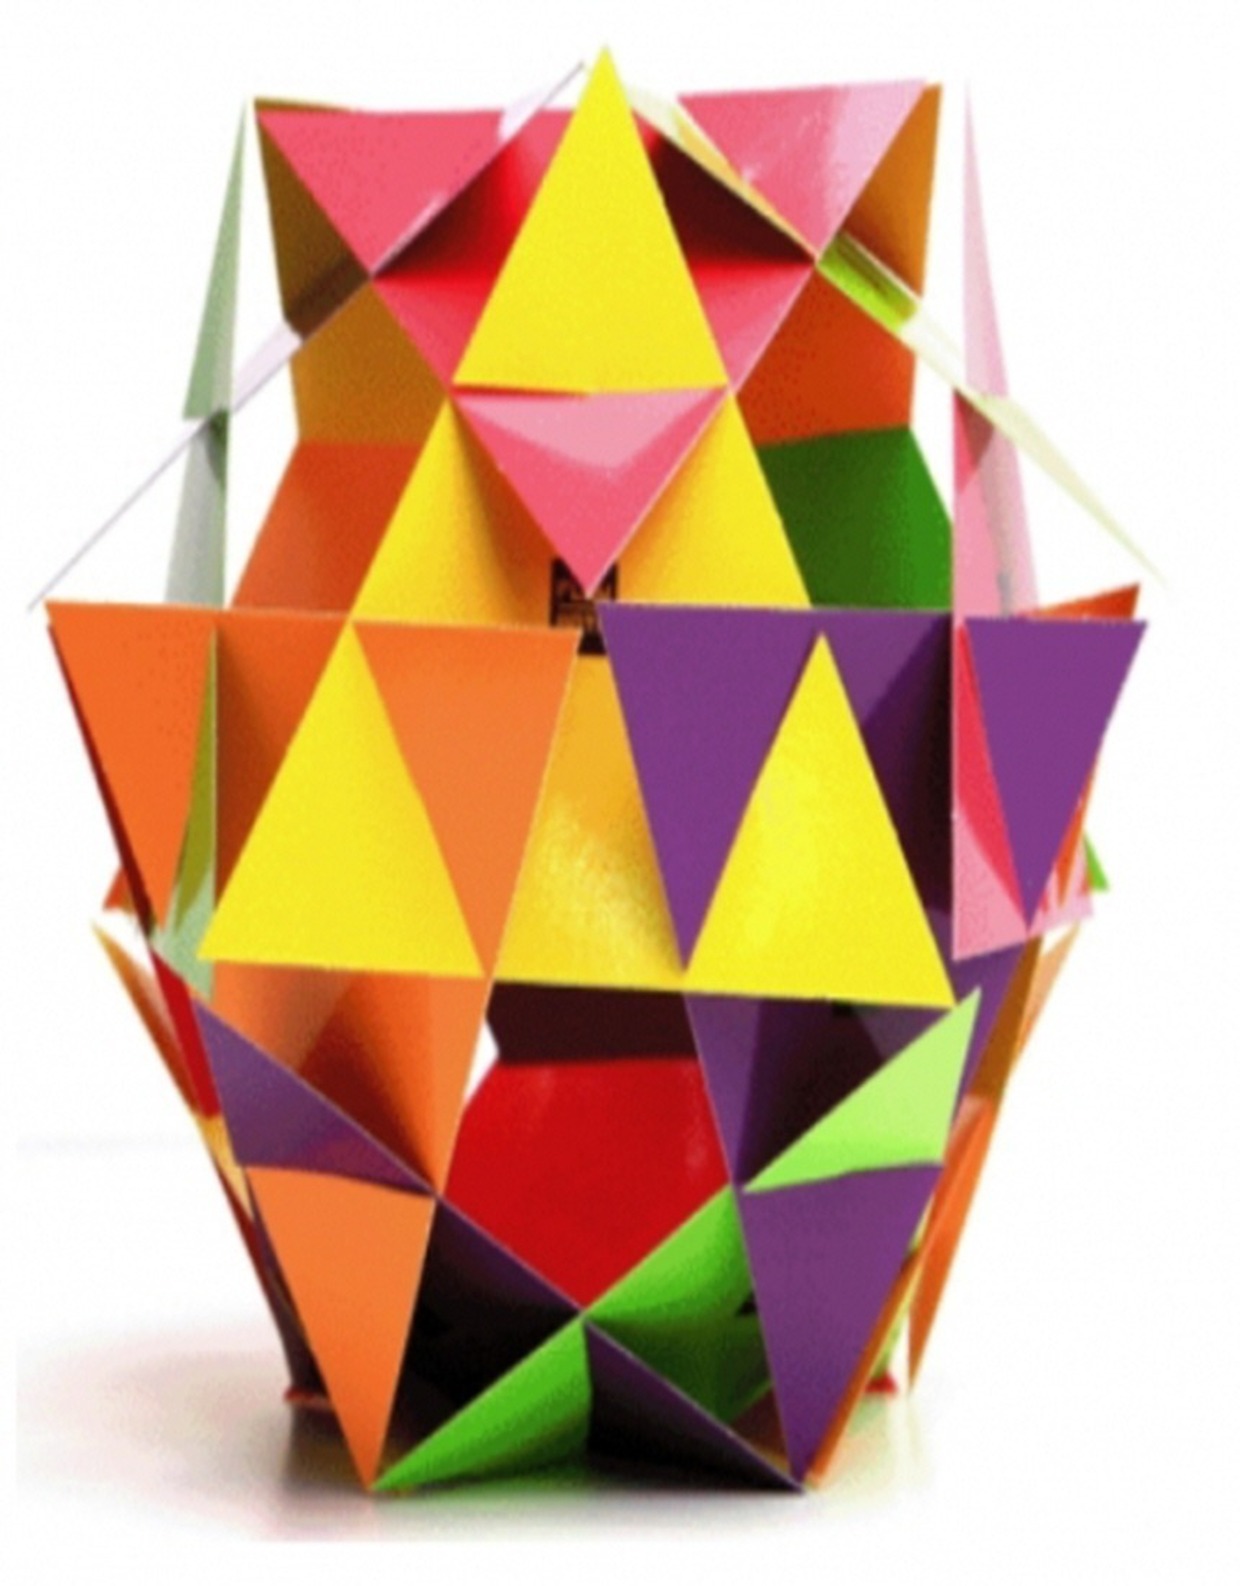 [수학체험] 정삼각형 축구공 만들기 체험교실